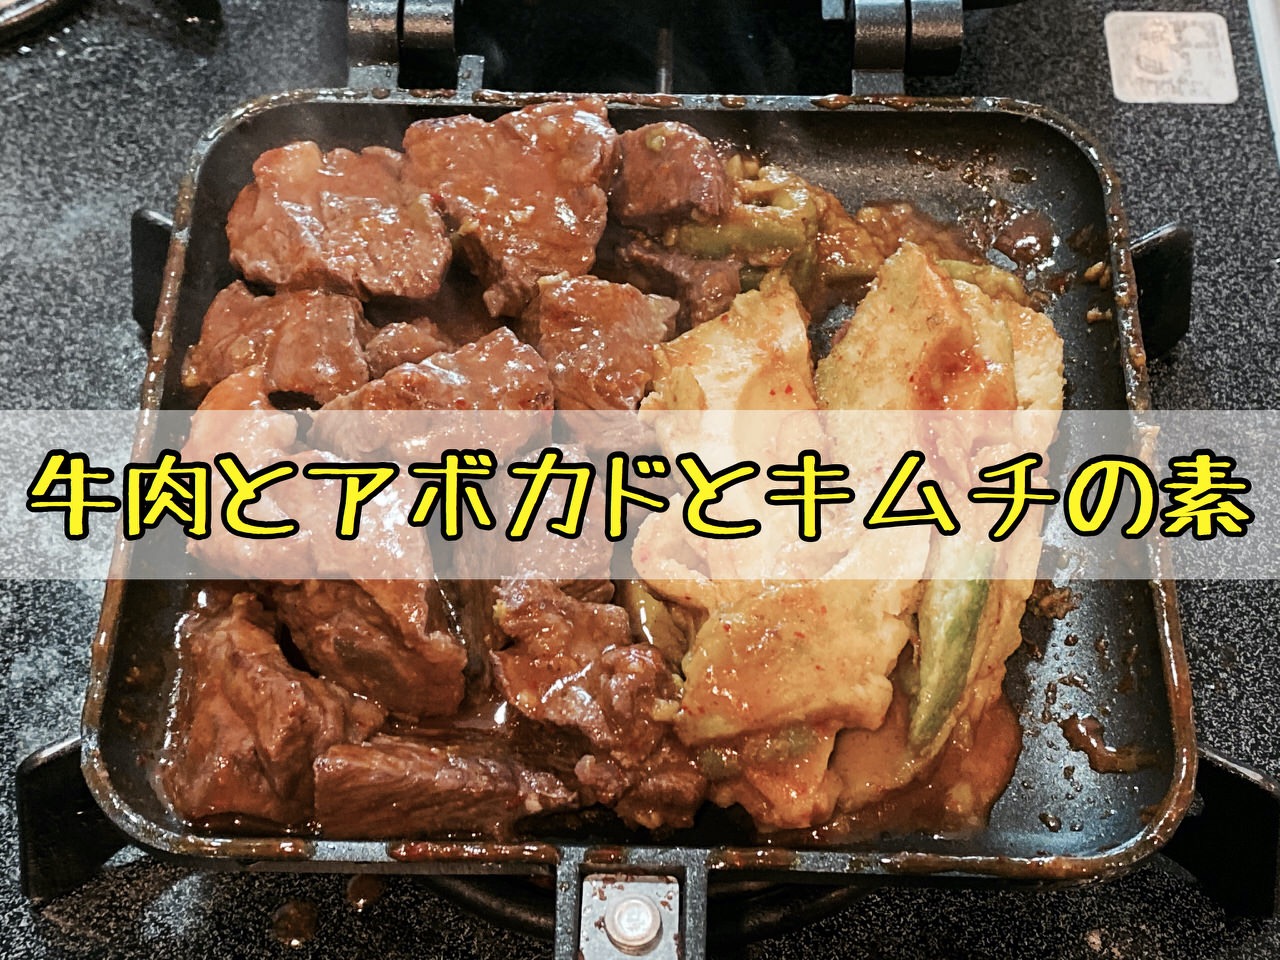 「ホットサンドメーカー」牛肉とアボカドとキムチの素を挟んで藤波辰爾のドラゴンステーキ